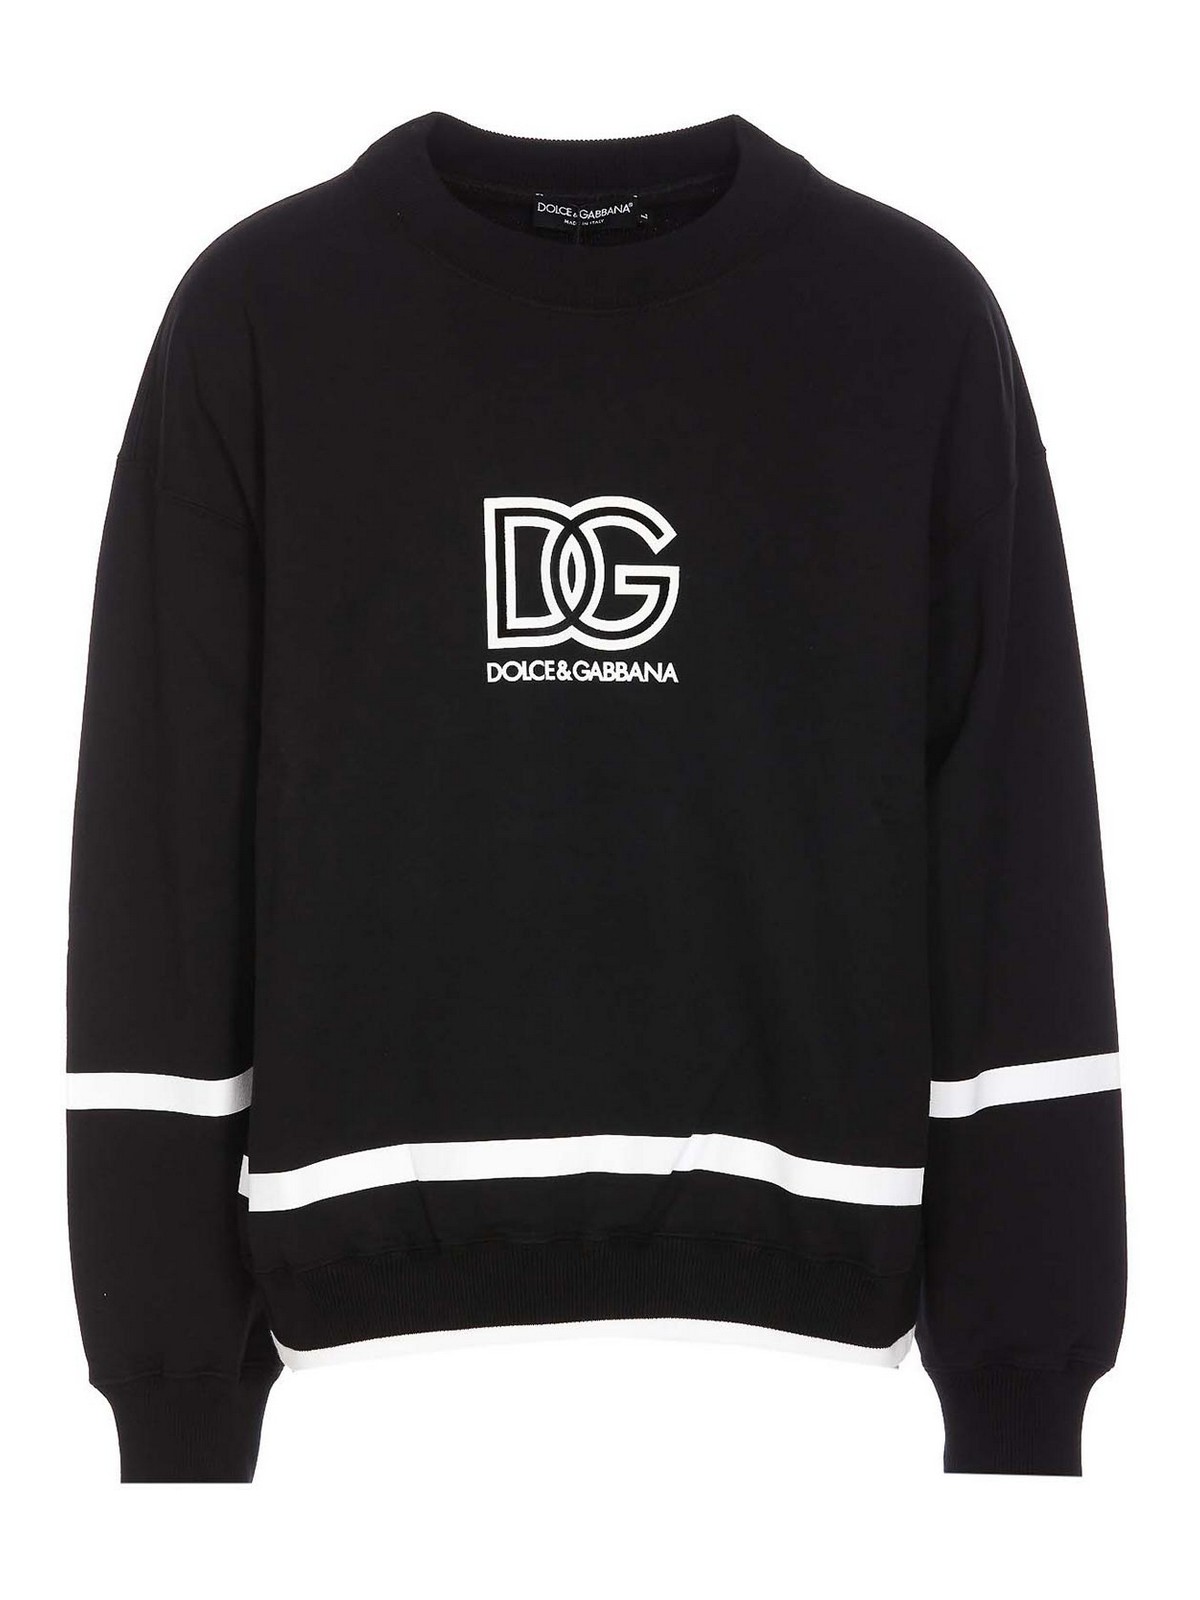 Dolce & Gabbana スウェットシャツ/セーター - 黒